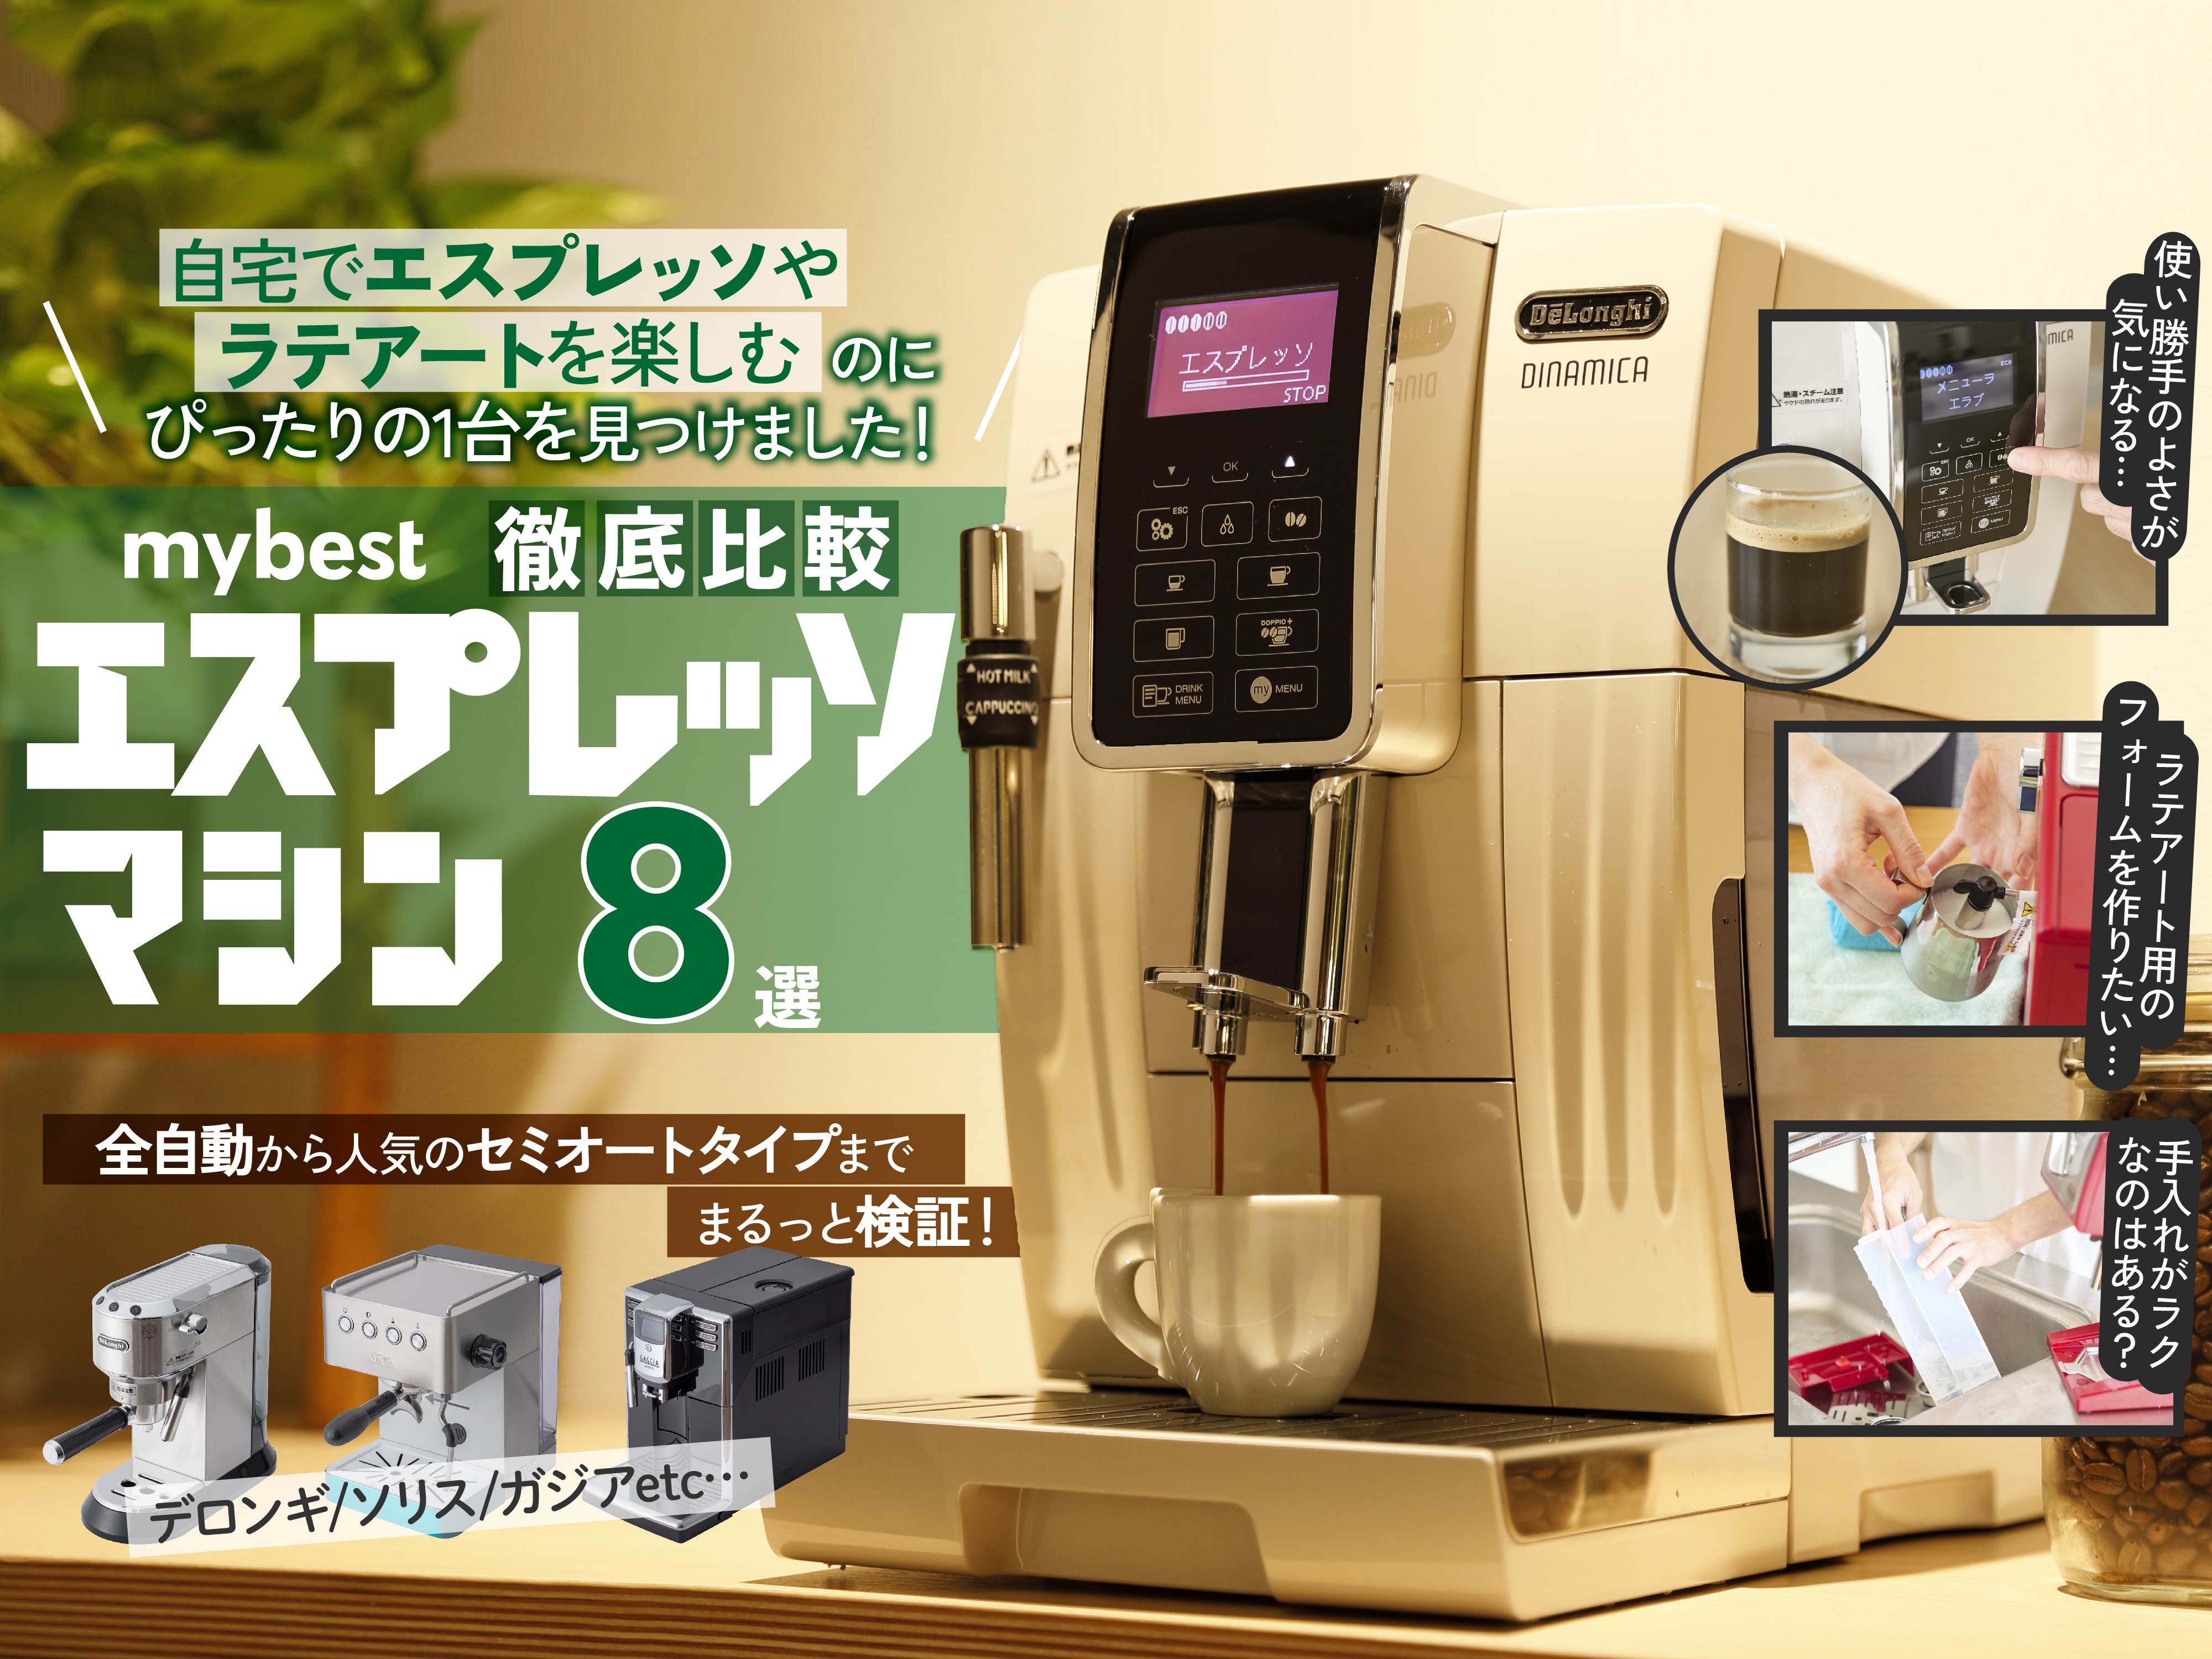 【送料無料安い】【DeLonghi】エスプレッソマシン コーヒーメーカー・エスプレッソマシン